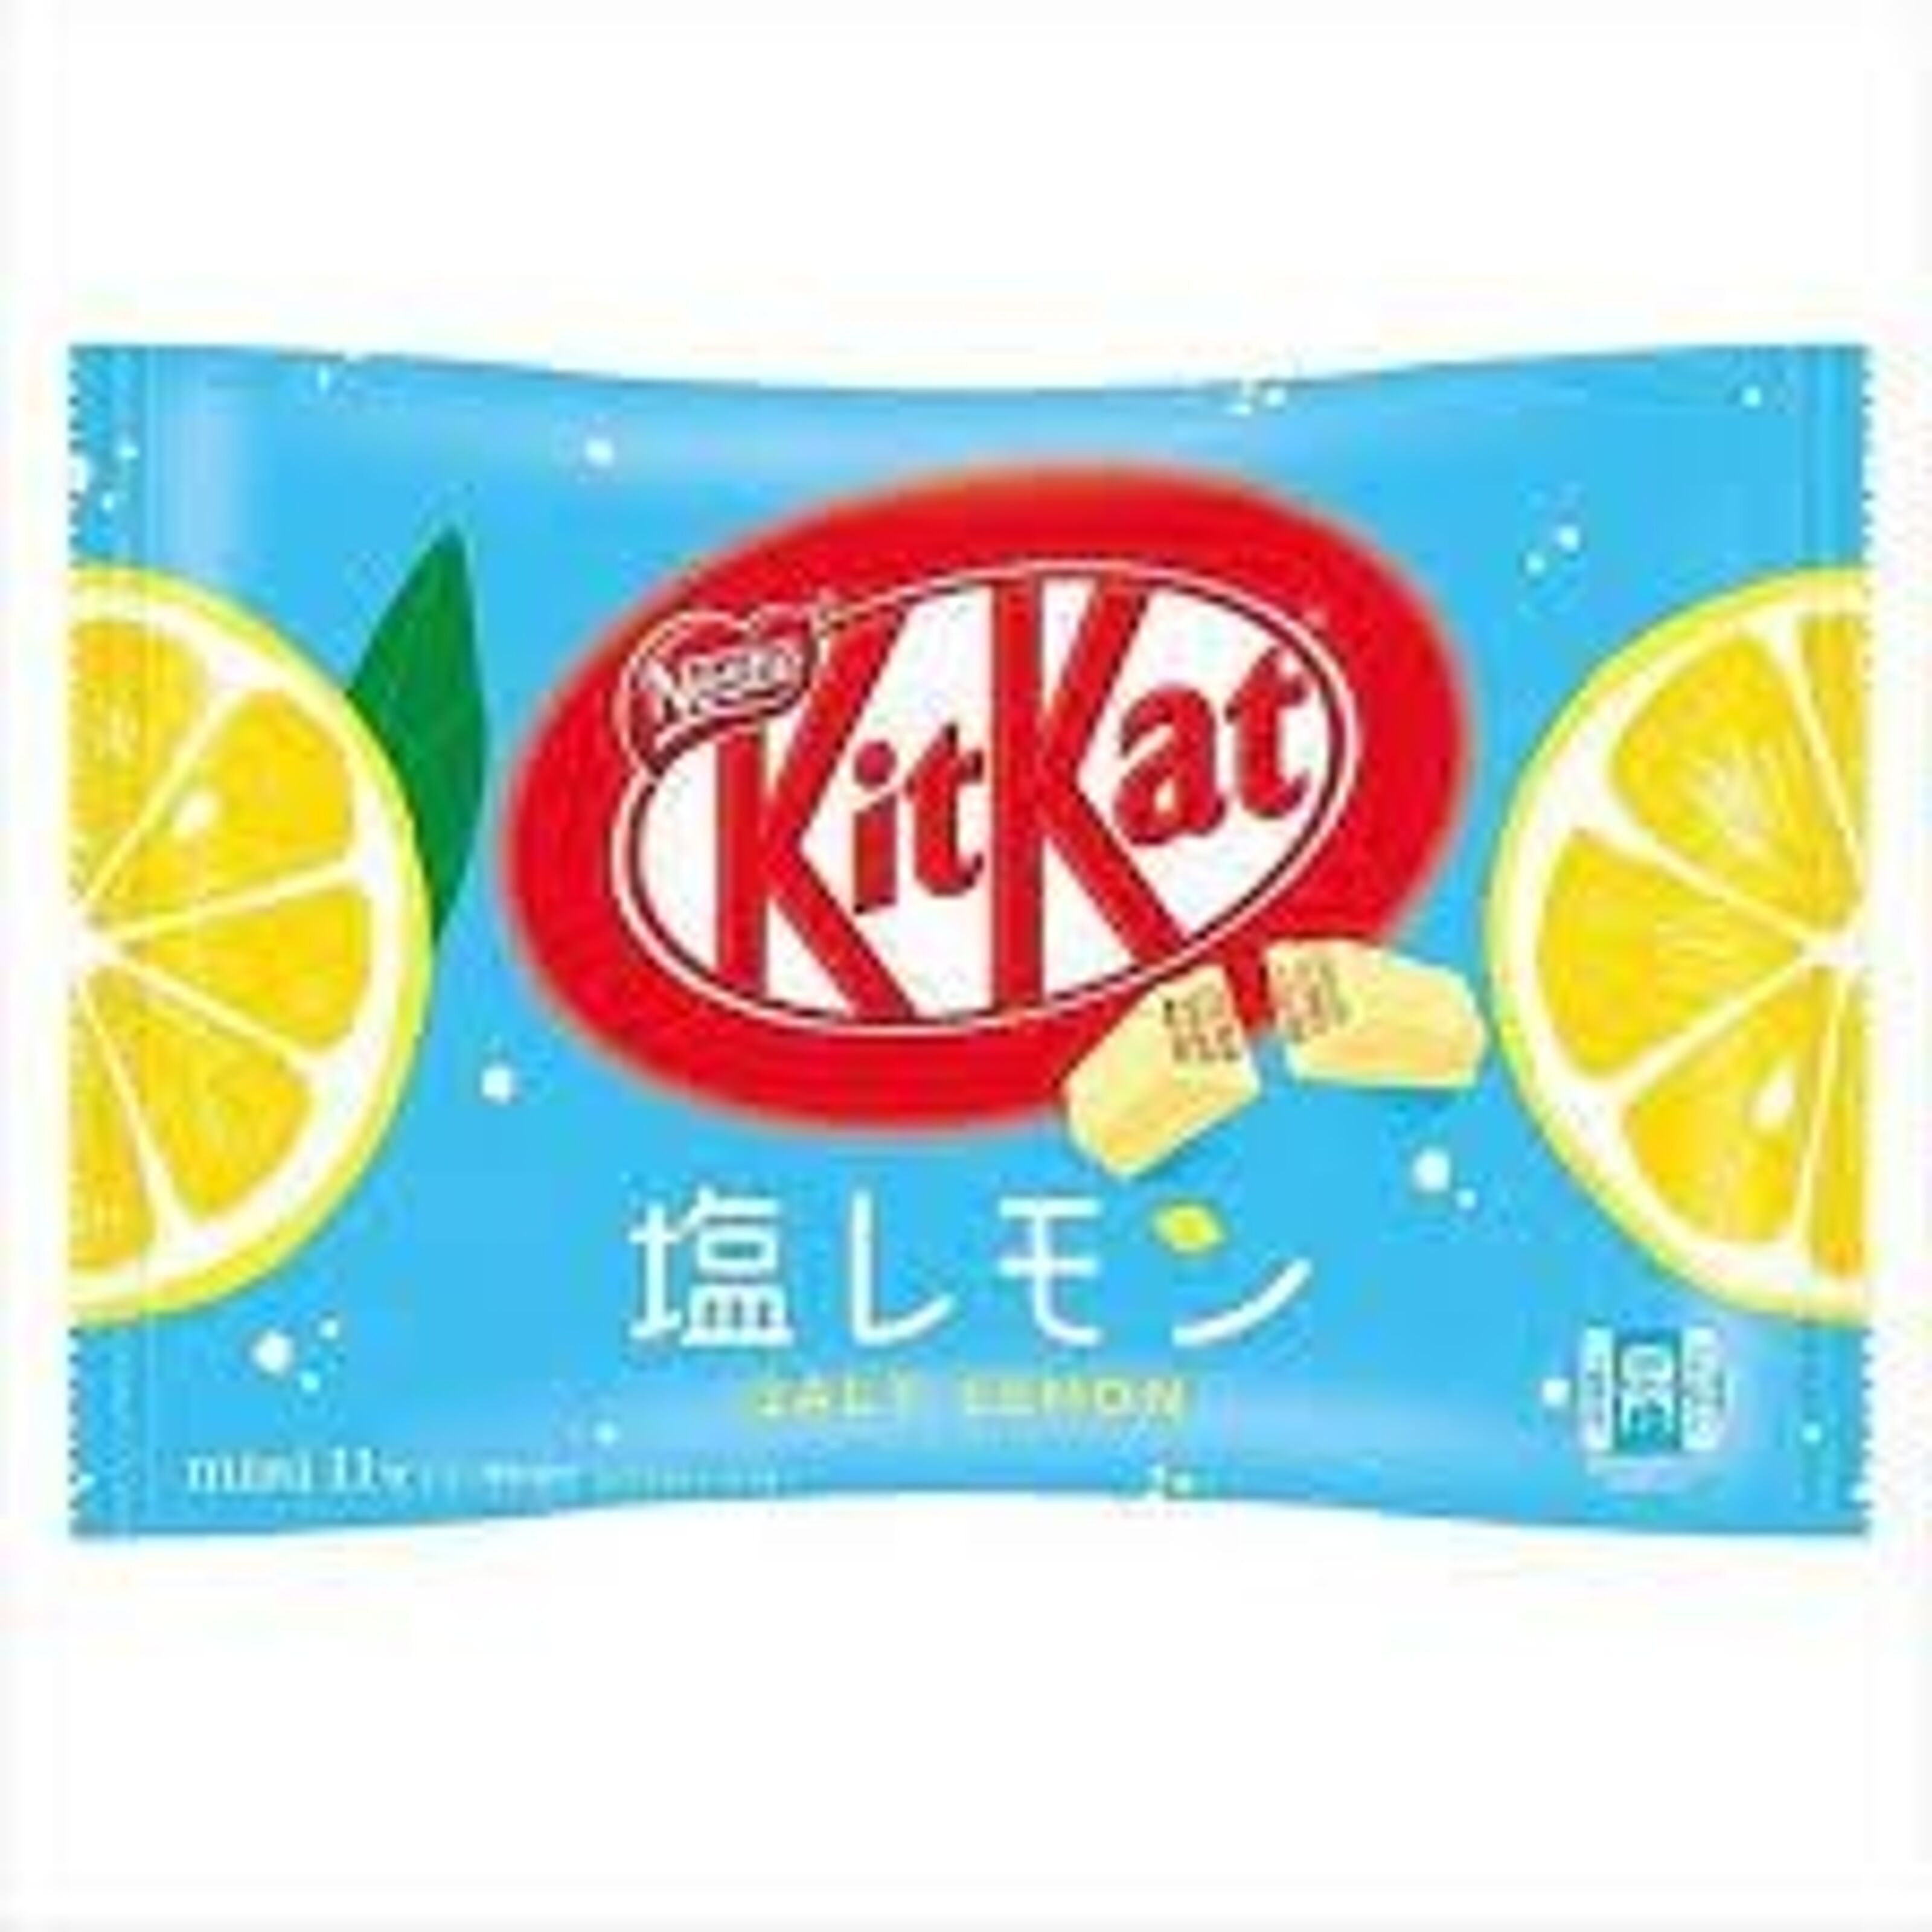 Achat Kit Kat Mini japonais Salt Lemon - Citron salé, 10PCS, 116G en gros